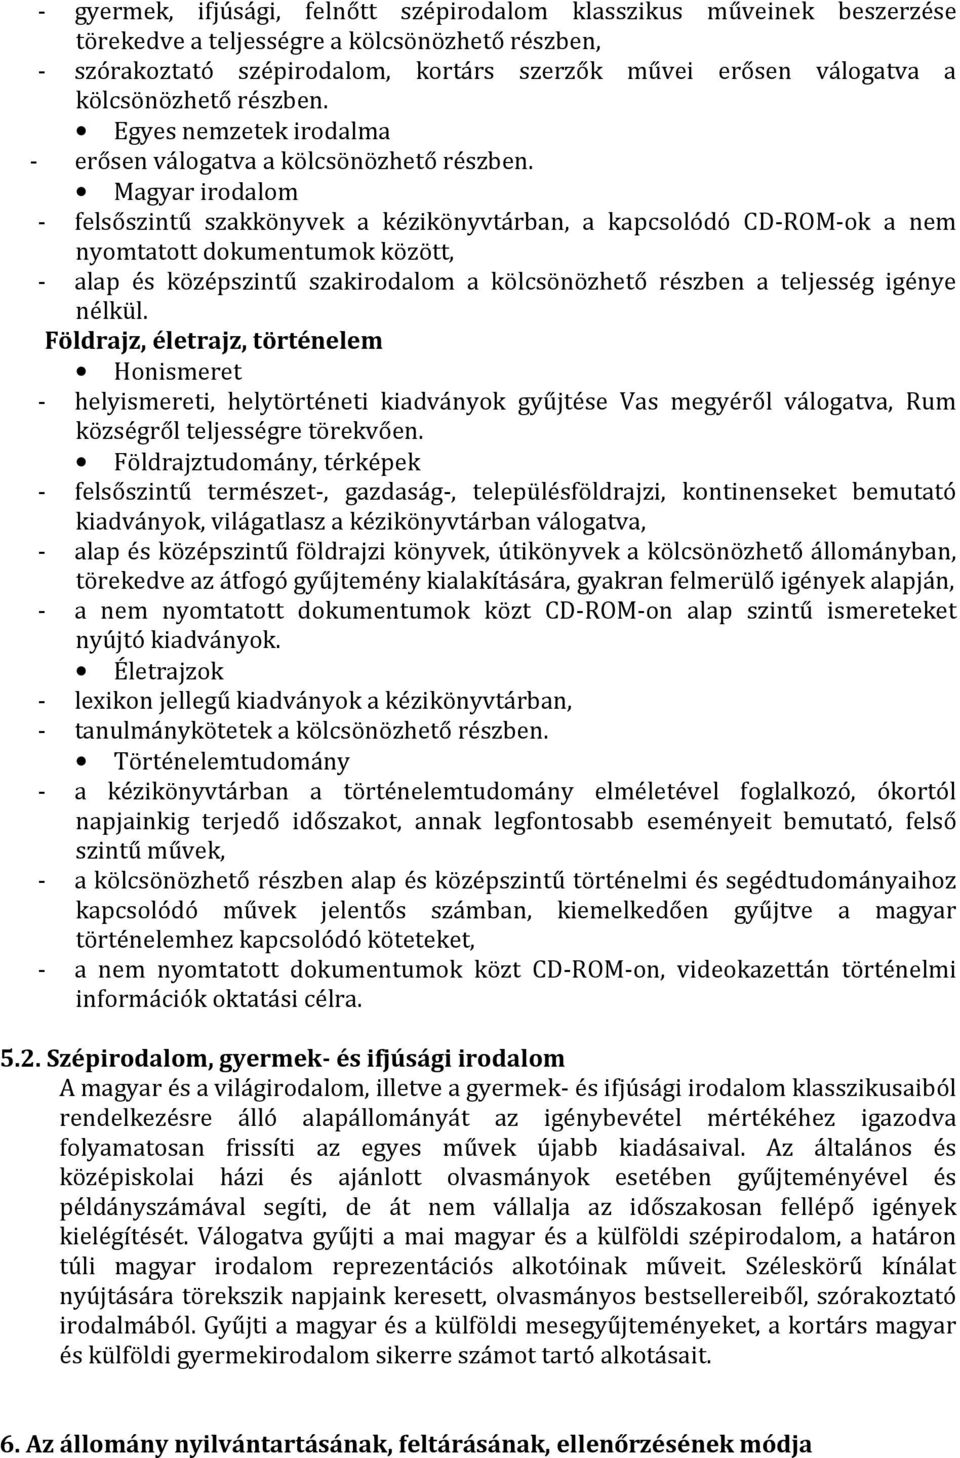 Magyar irodalom - felsőszintű szakkönyvek a kézikönyvtárban, a kapcsolódó CD-ROM-ok a nem nyomtatott dokumentumok között, - alap és középszintű szakirodalom a kölcsönözhető részben a teljesség igénye